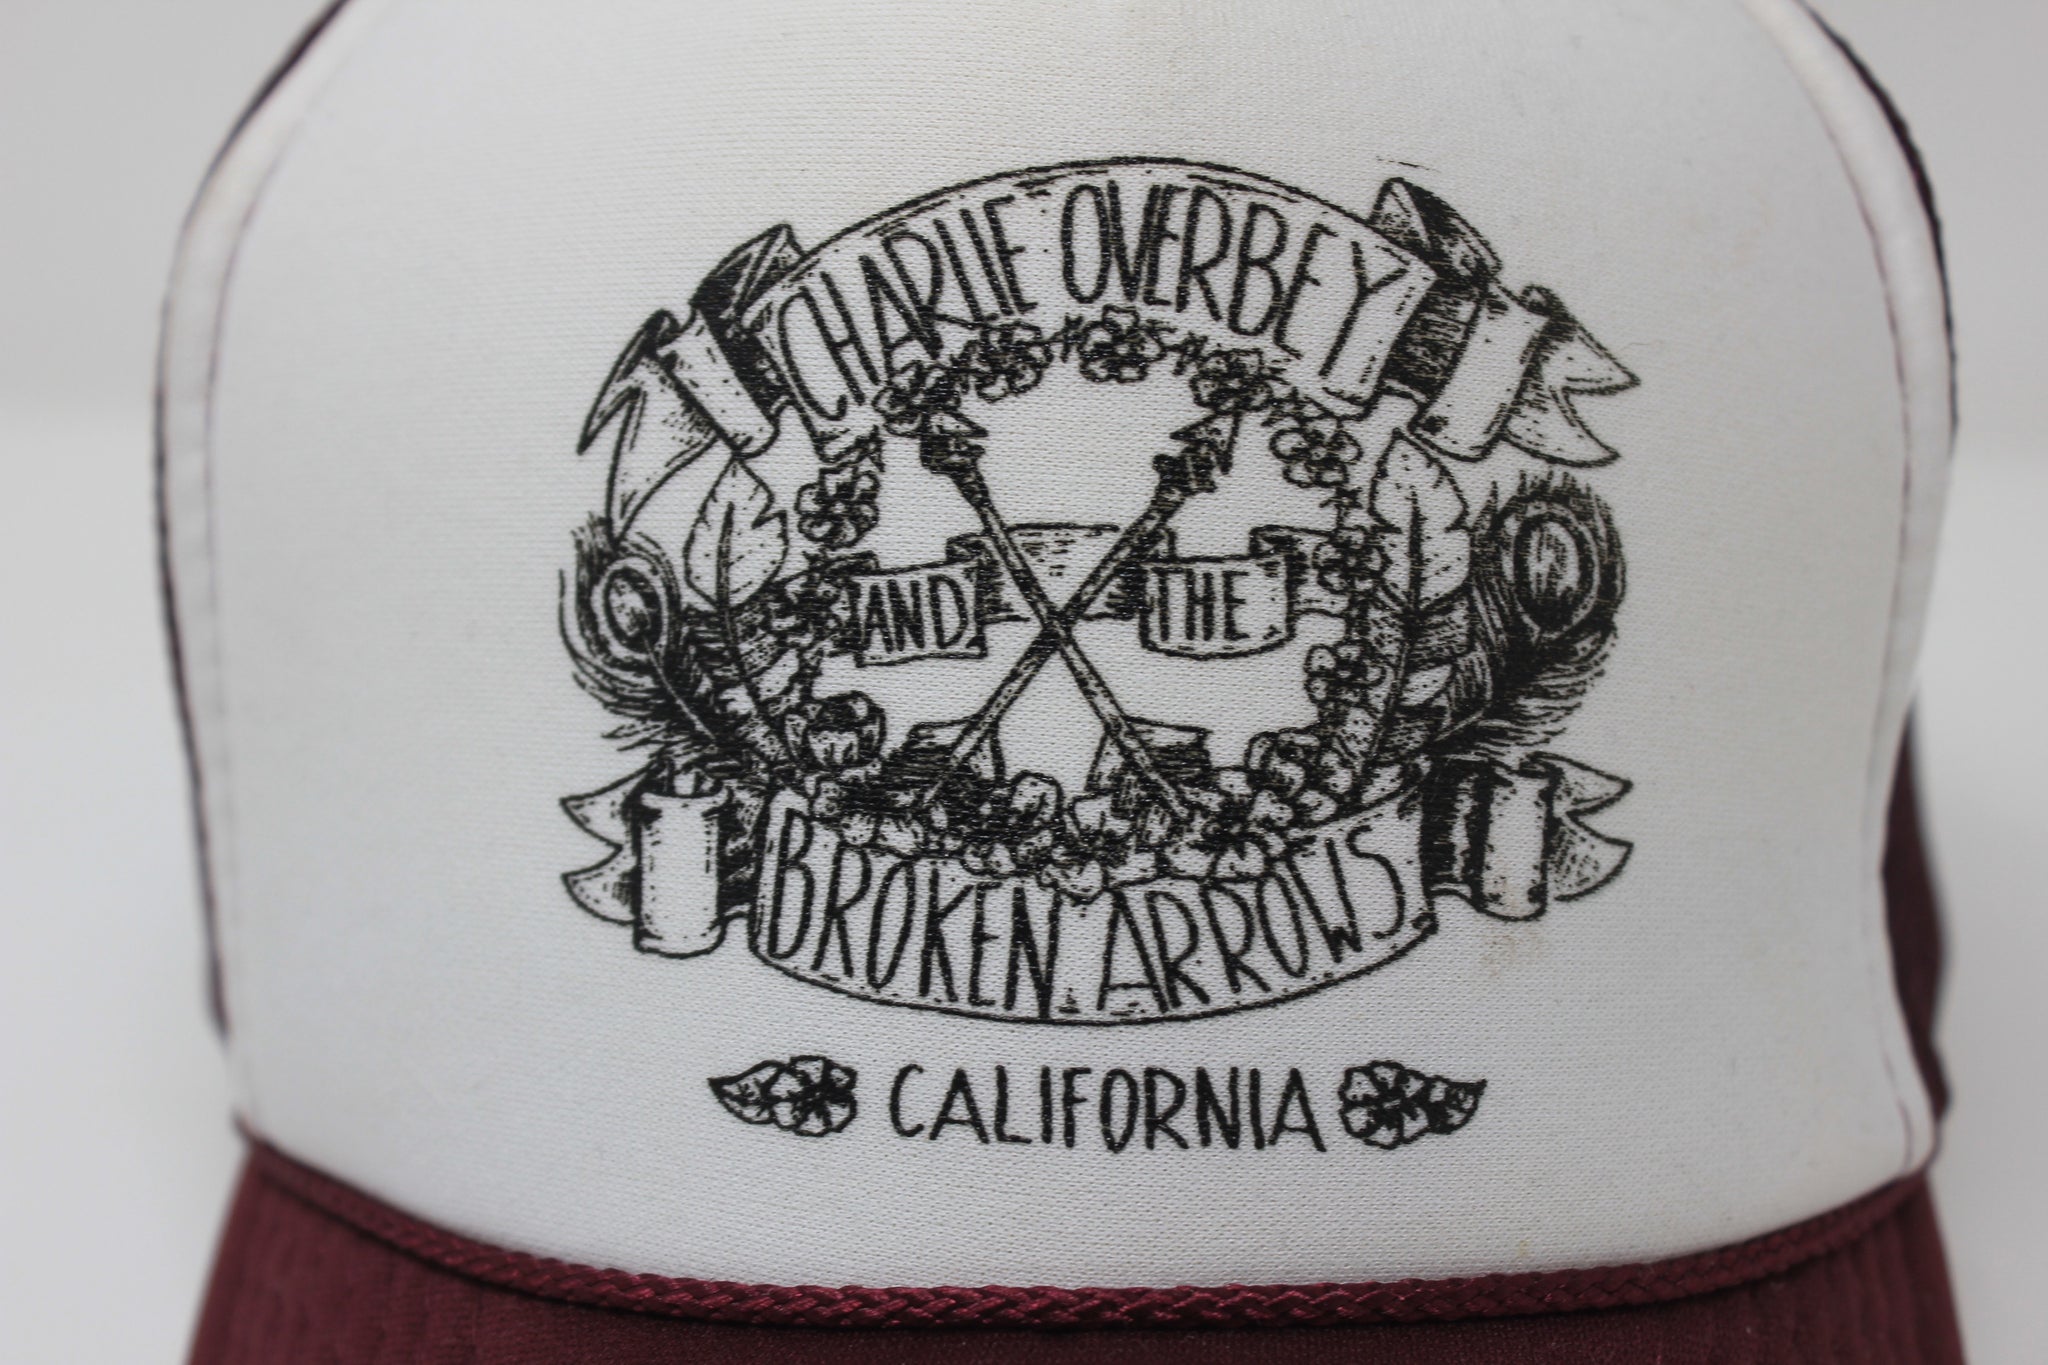 Charlie Overbey & The Broken Arrows Trucker Hat